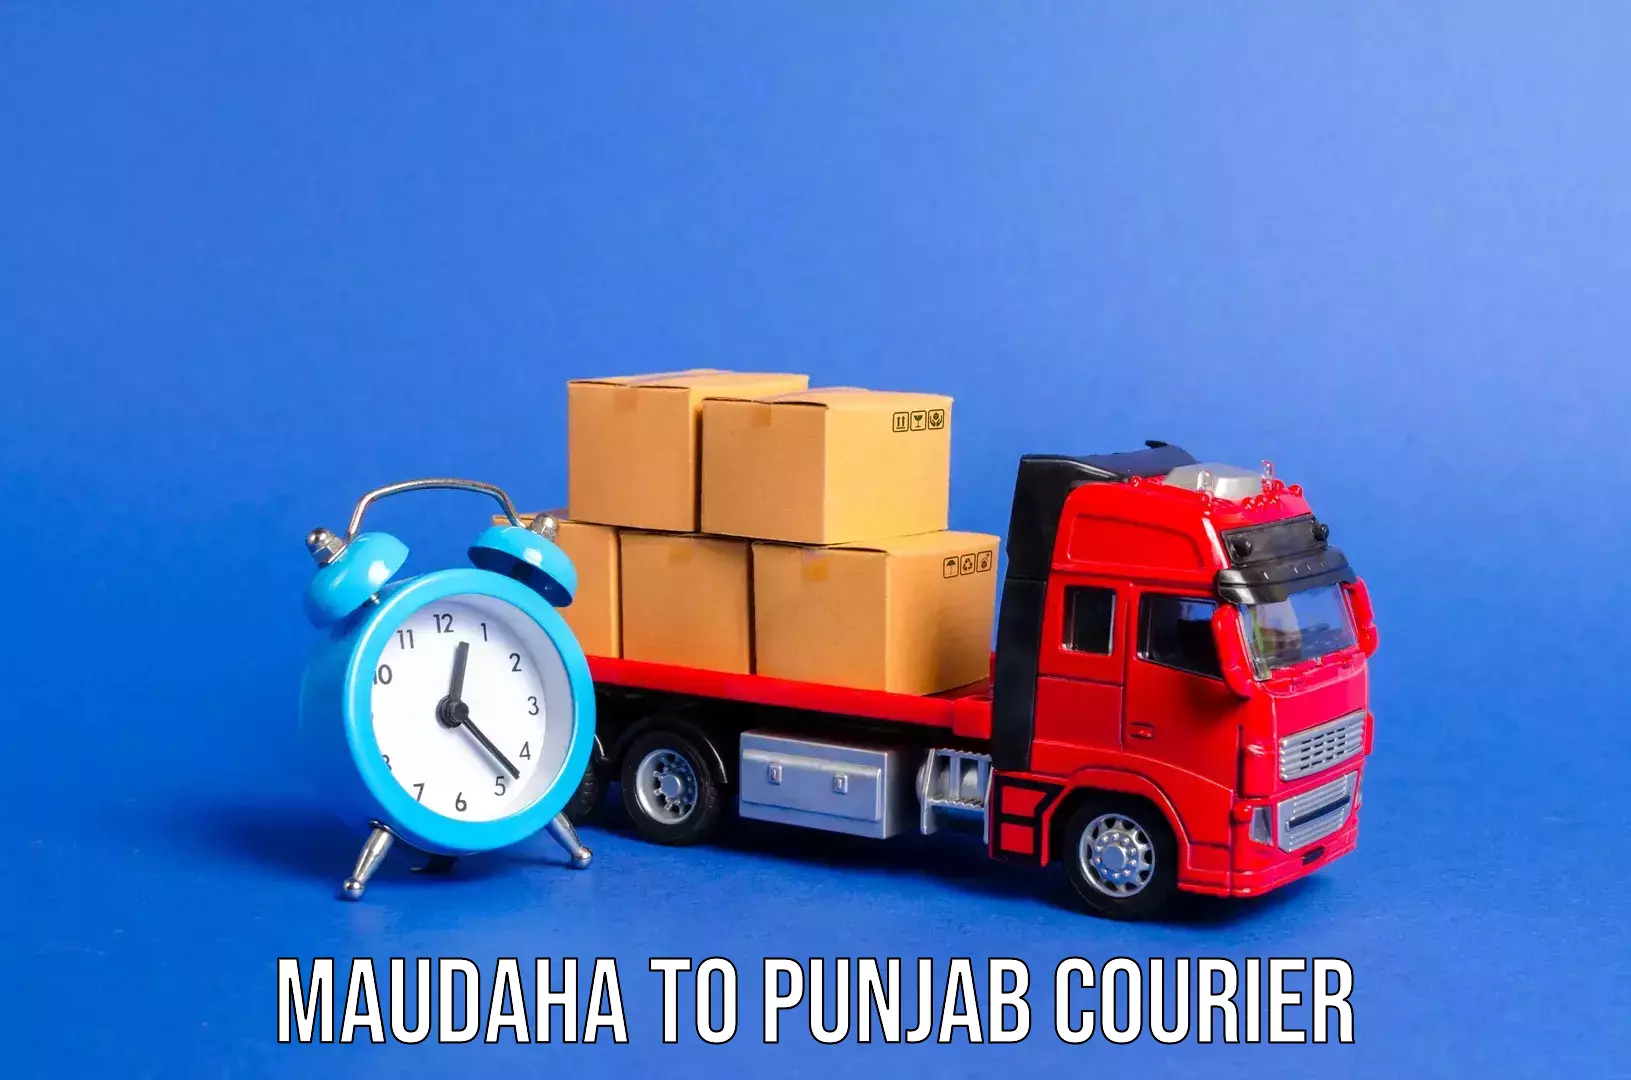 Luggage transport company Maudaha to Punjab